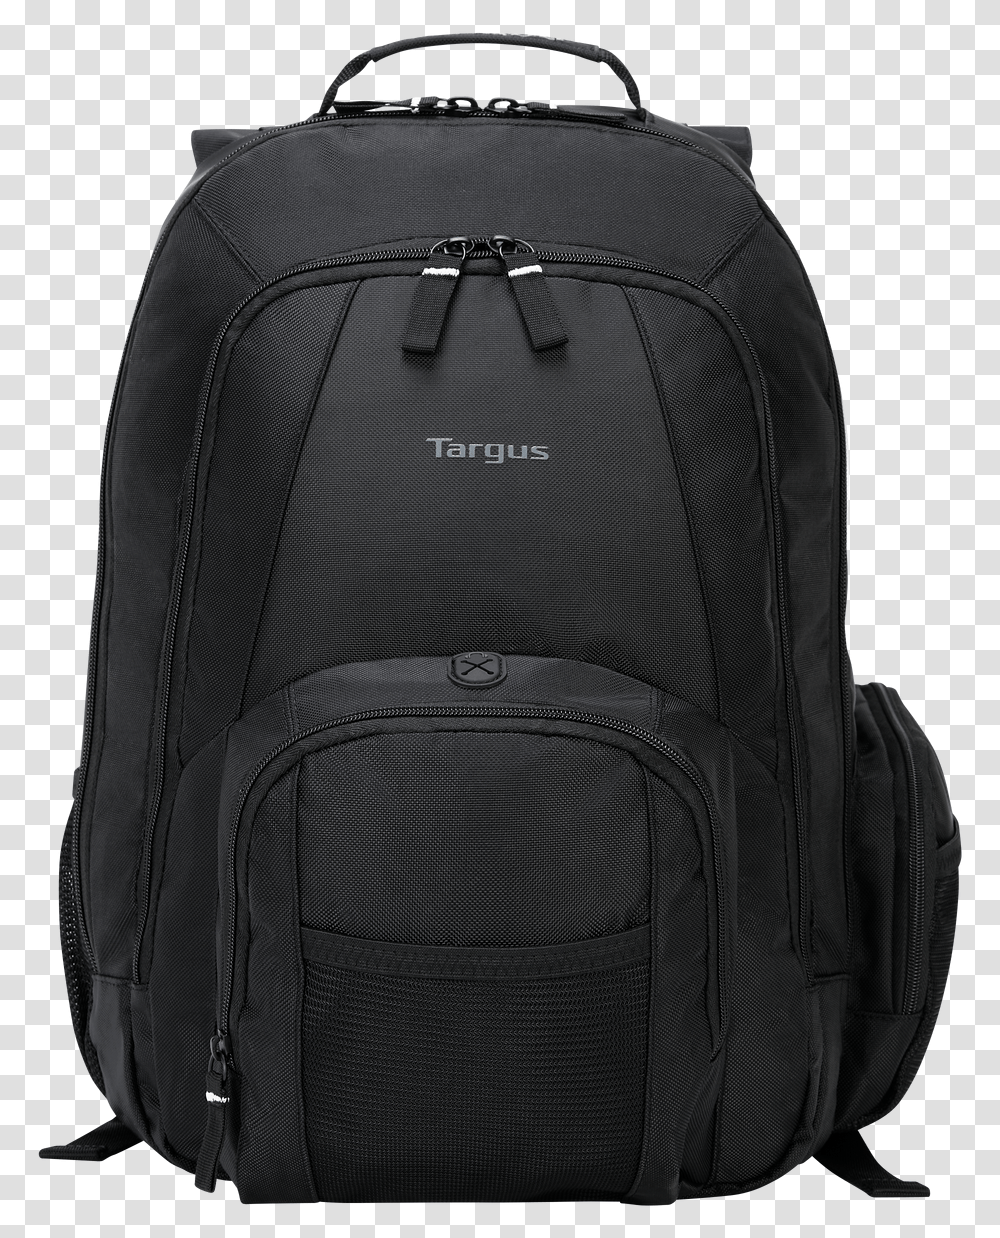 Black Targus Backpack, Bag Transparent Png